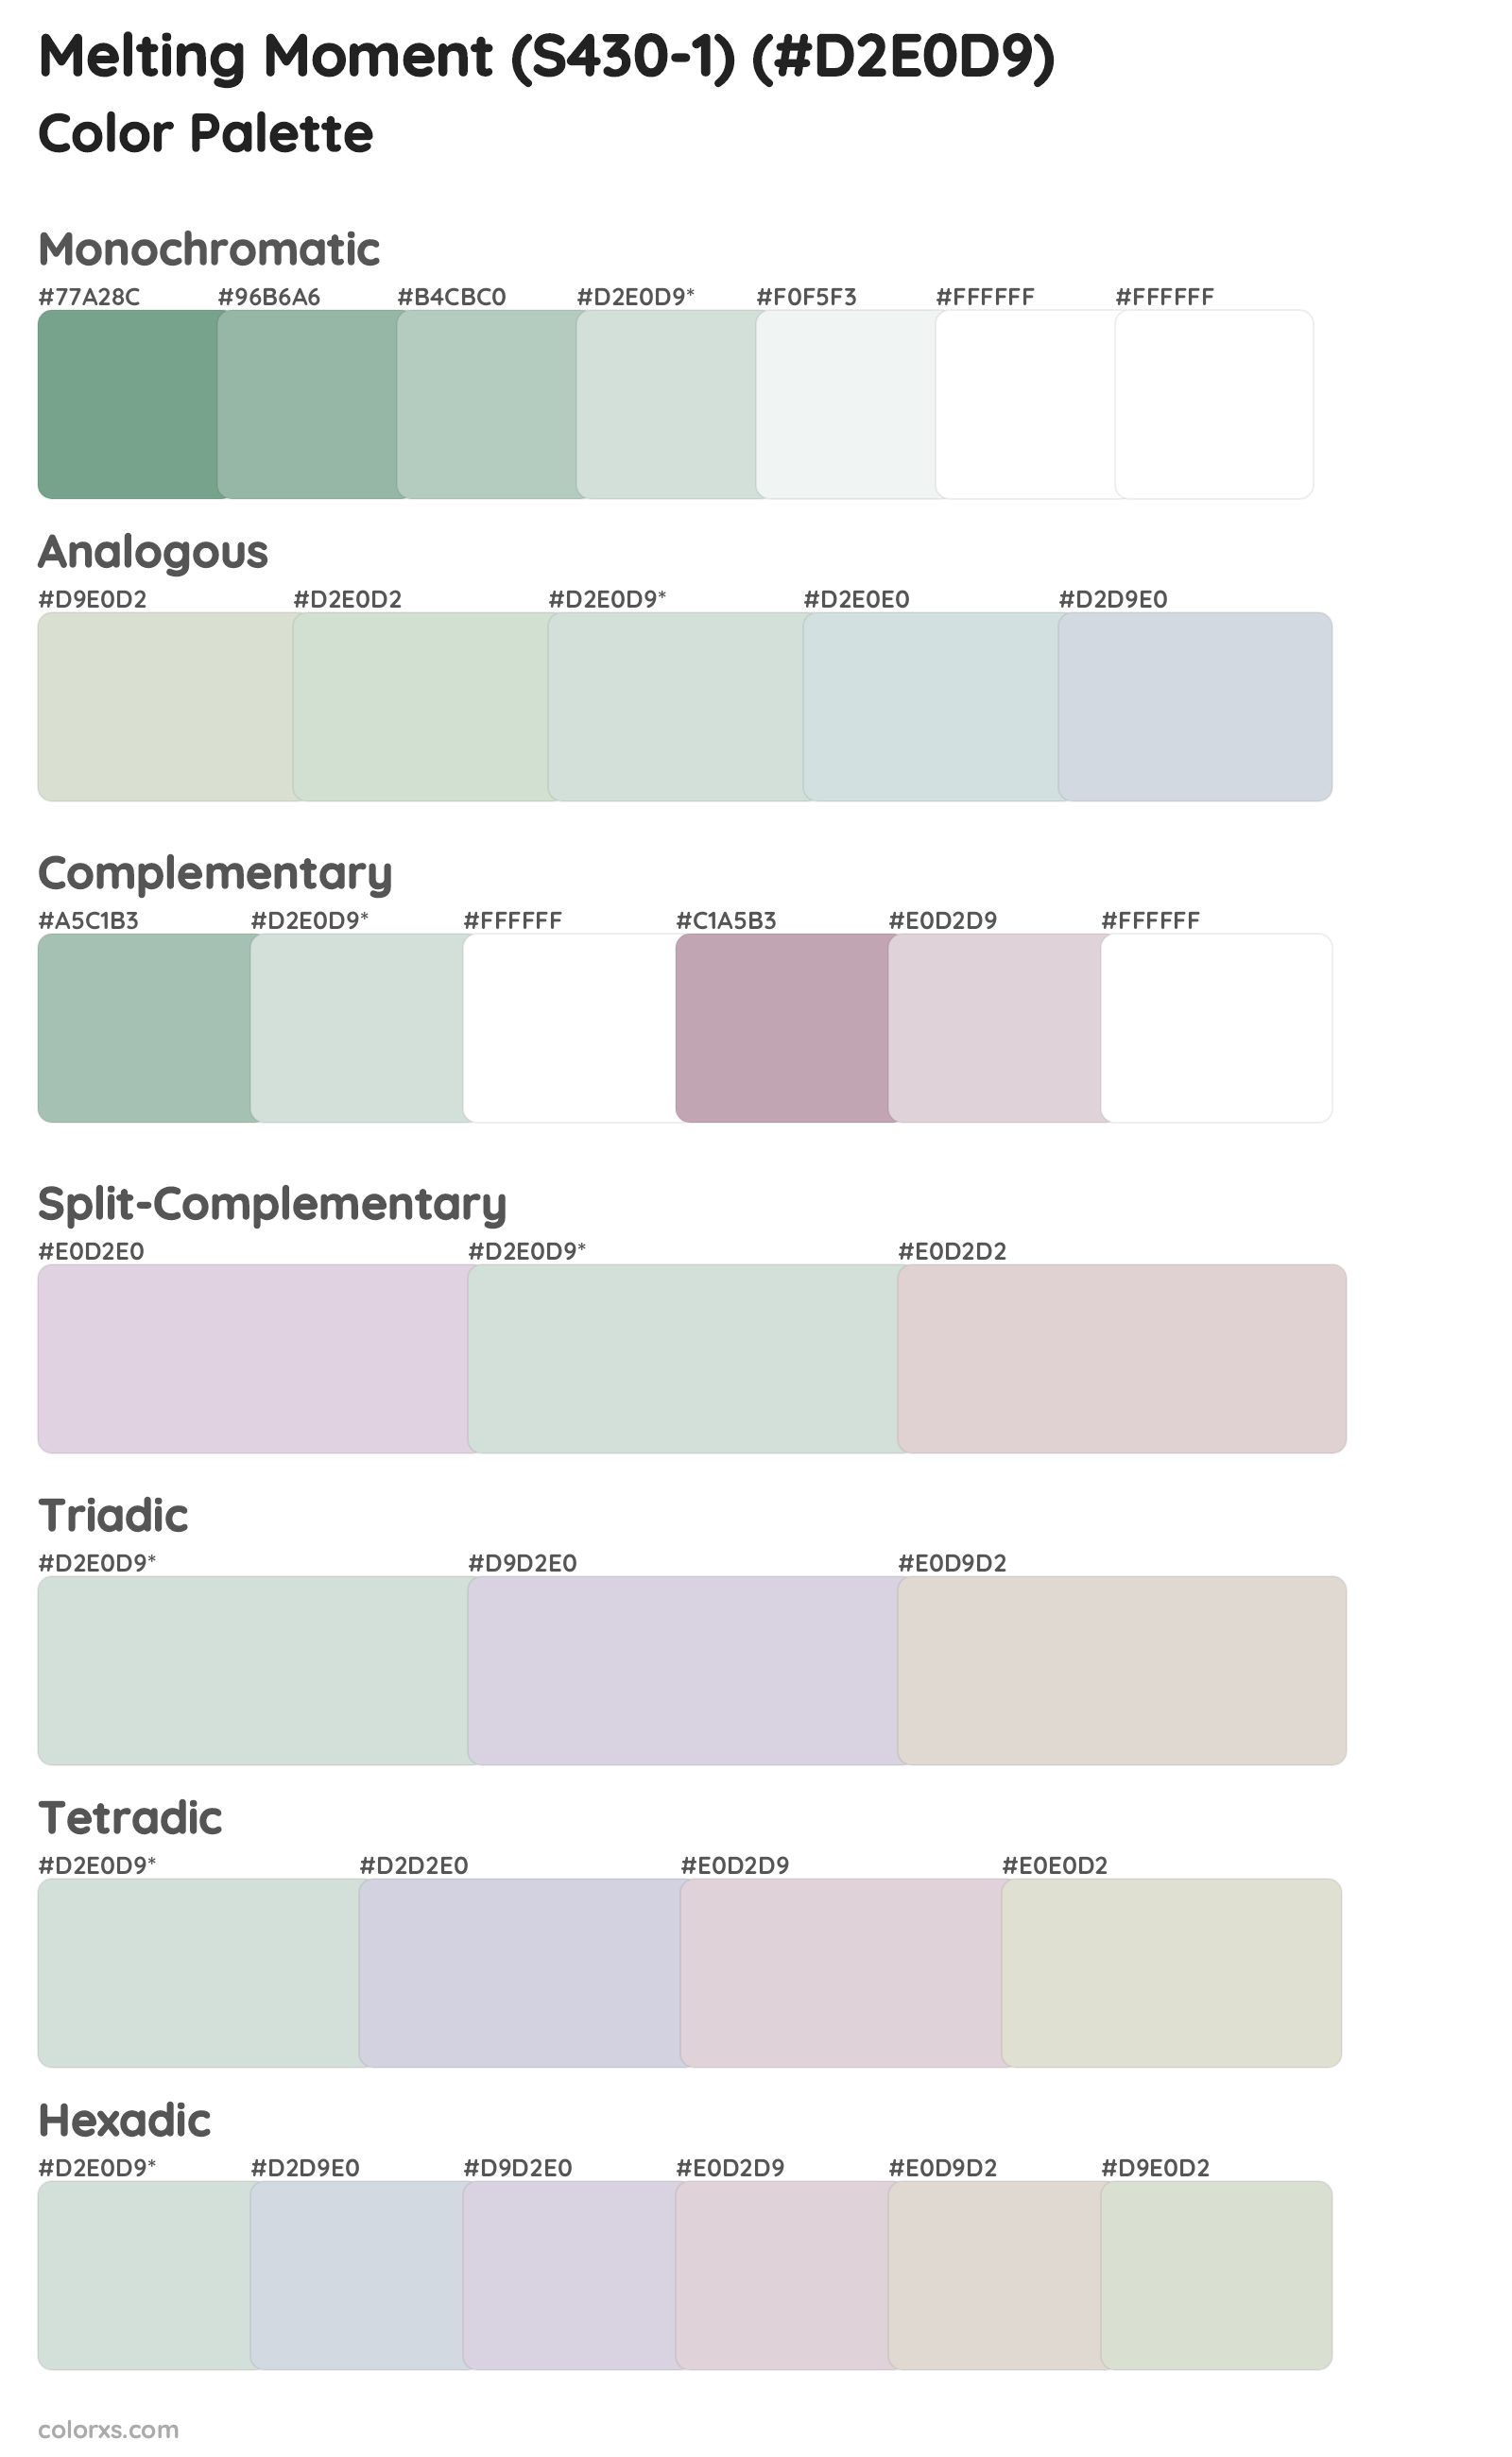 Melting Moment (S430-1) Color Scheme Palettes